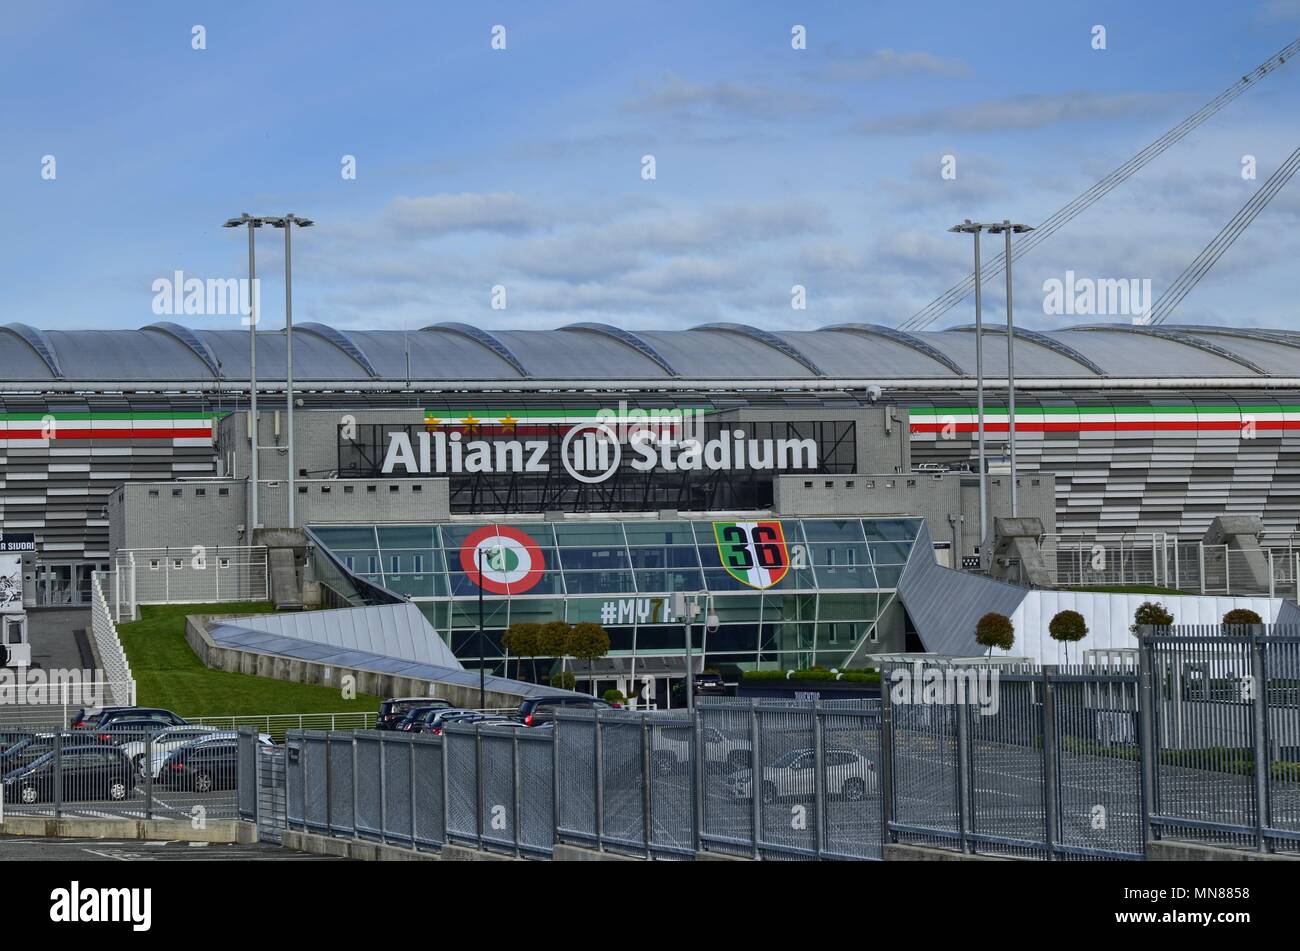 Albero Di Natale Juventus Stadium.Juventus Logo Immagini E Fotos Stock Alamy